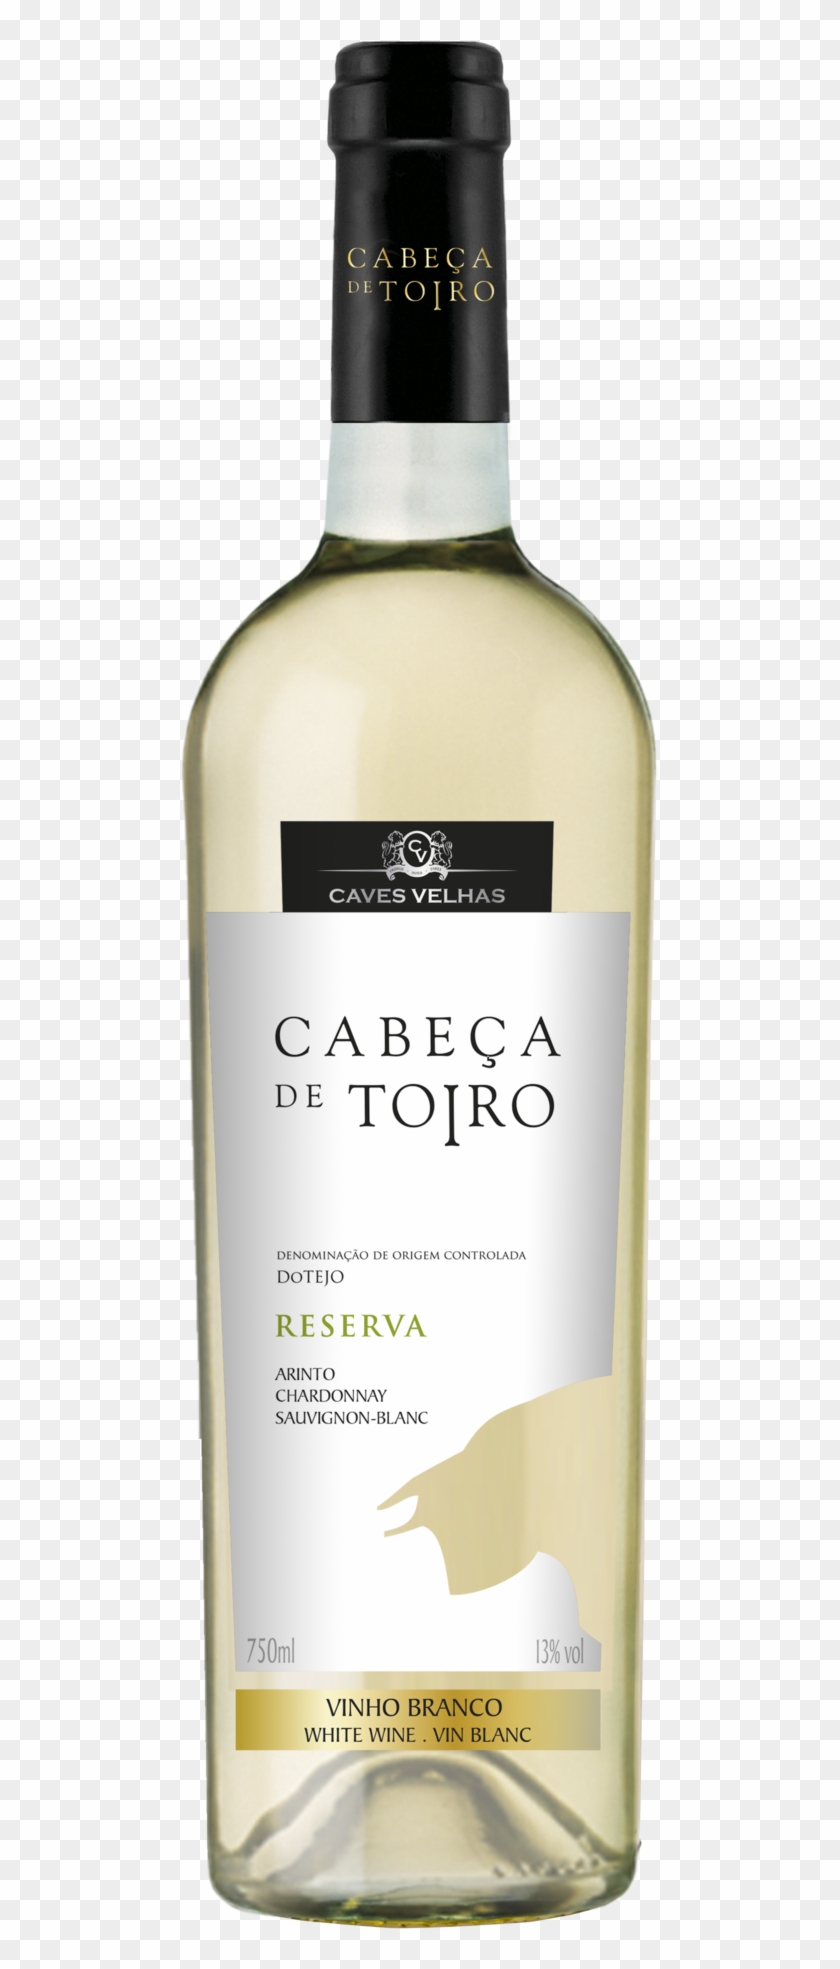 Wines From Tejo - Cabeça De Toiro Sauvignon Blanc Clipart #1838584